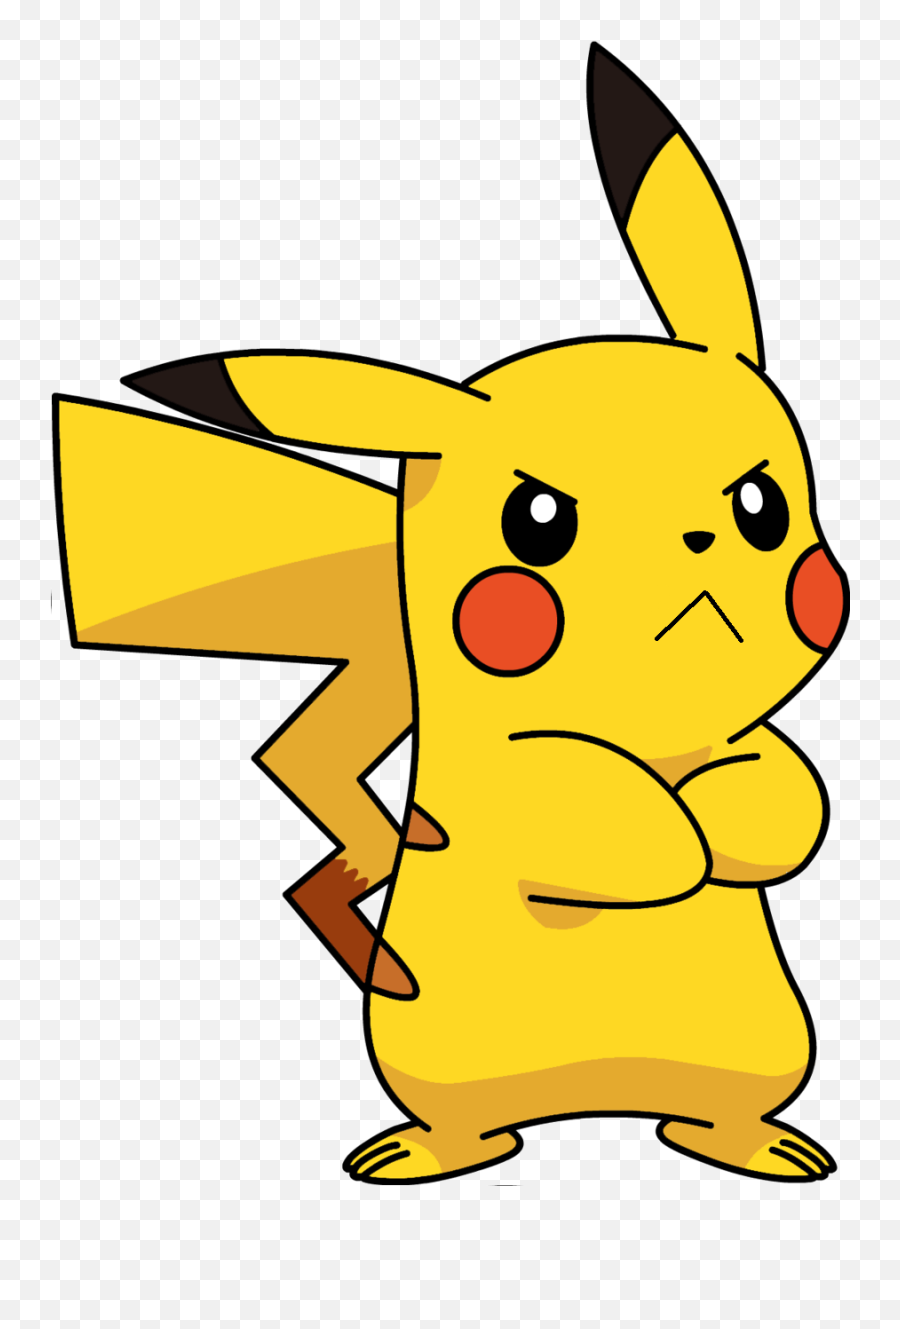 Pikachu Clipart Pitcher - Pikachu Png Angry Emoji,Pikachu Clipart